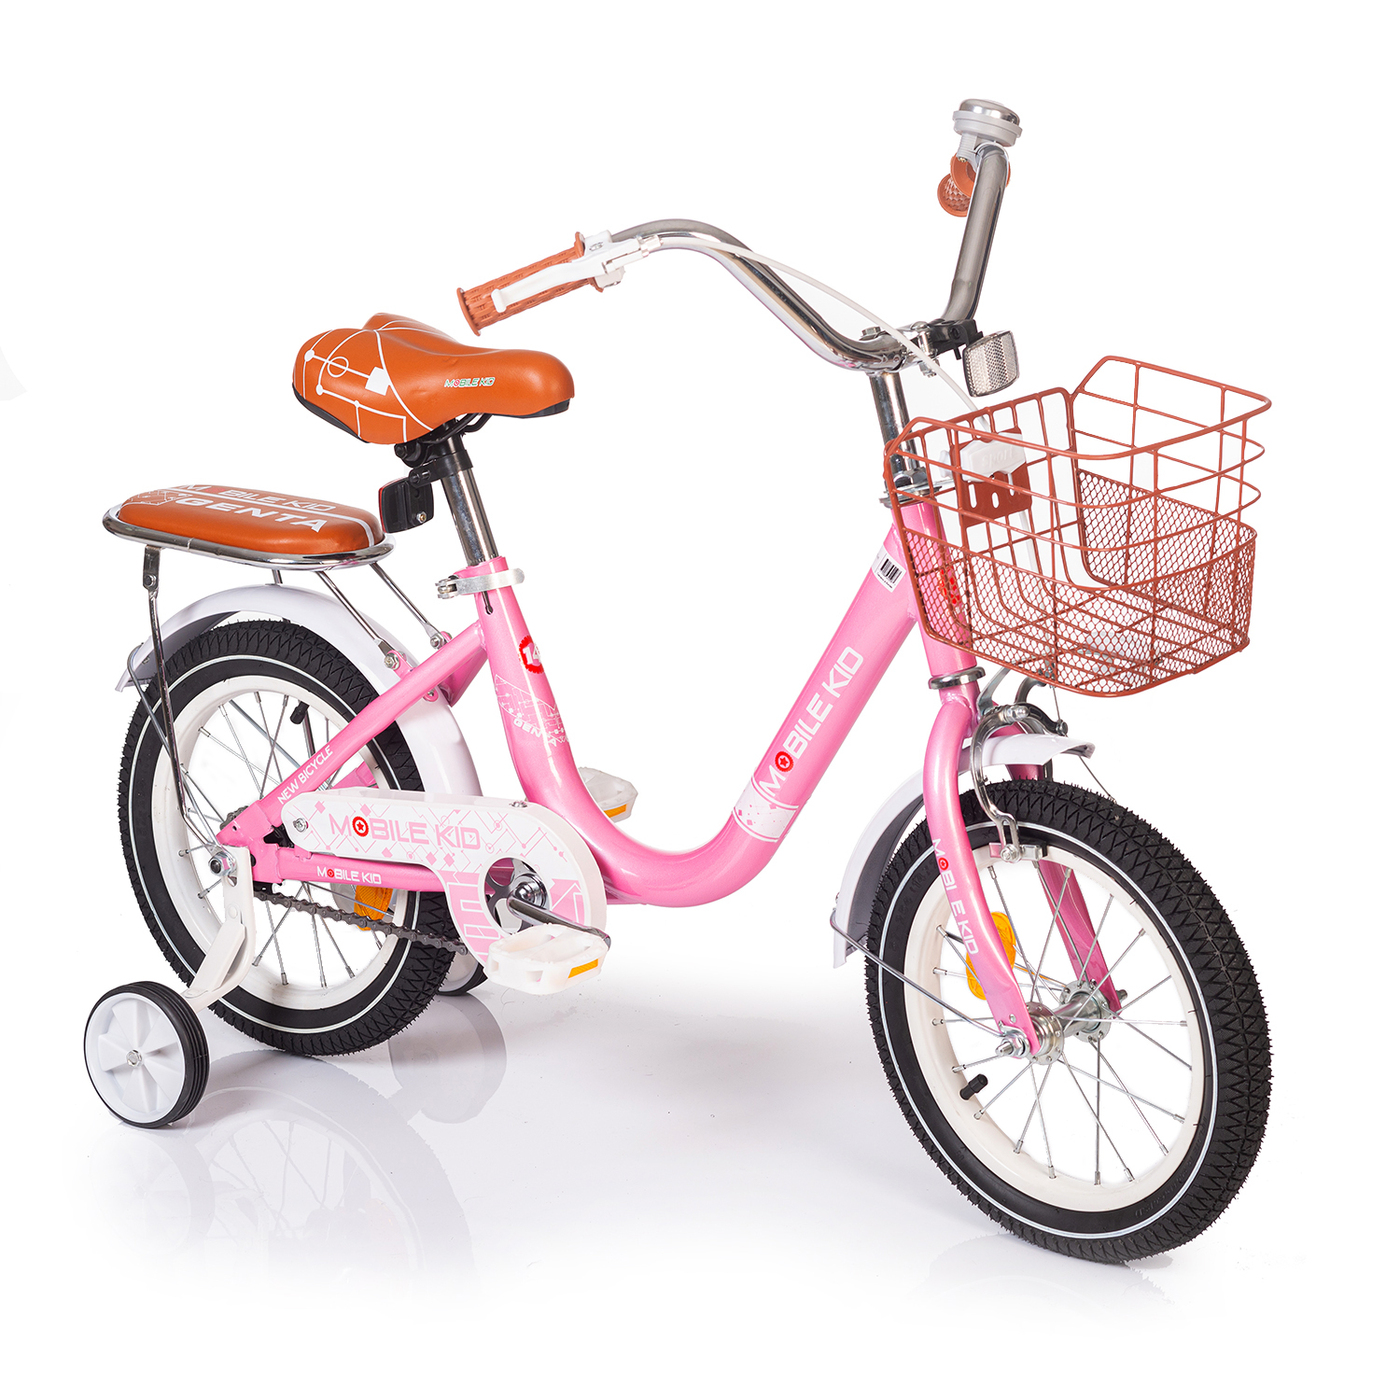 Велосипед Mobile Kid Genta 14 розовый велосипед mobile kid genta 18 темно зеленый